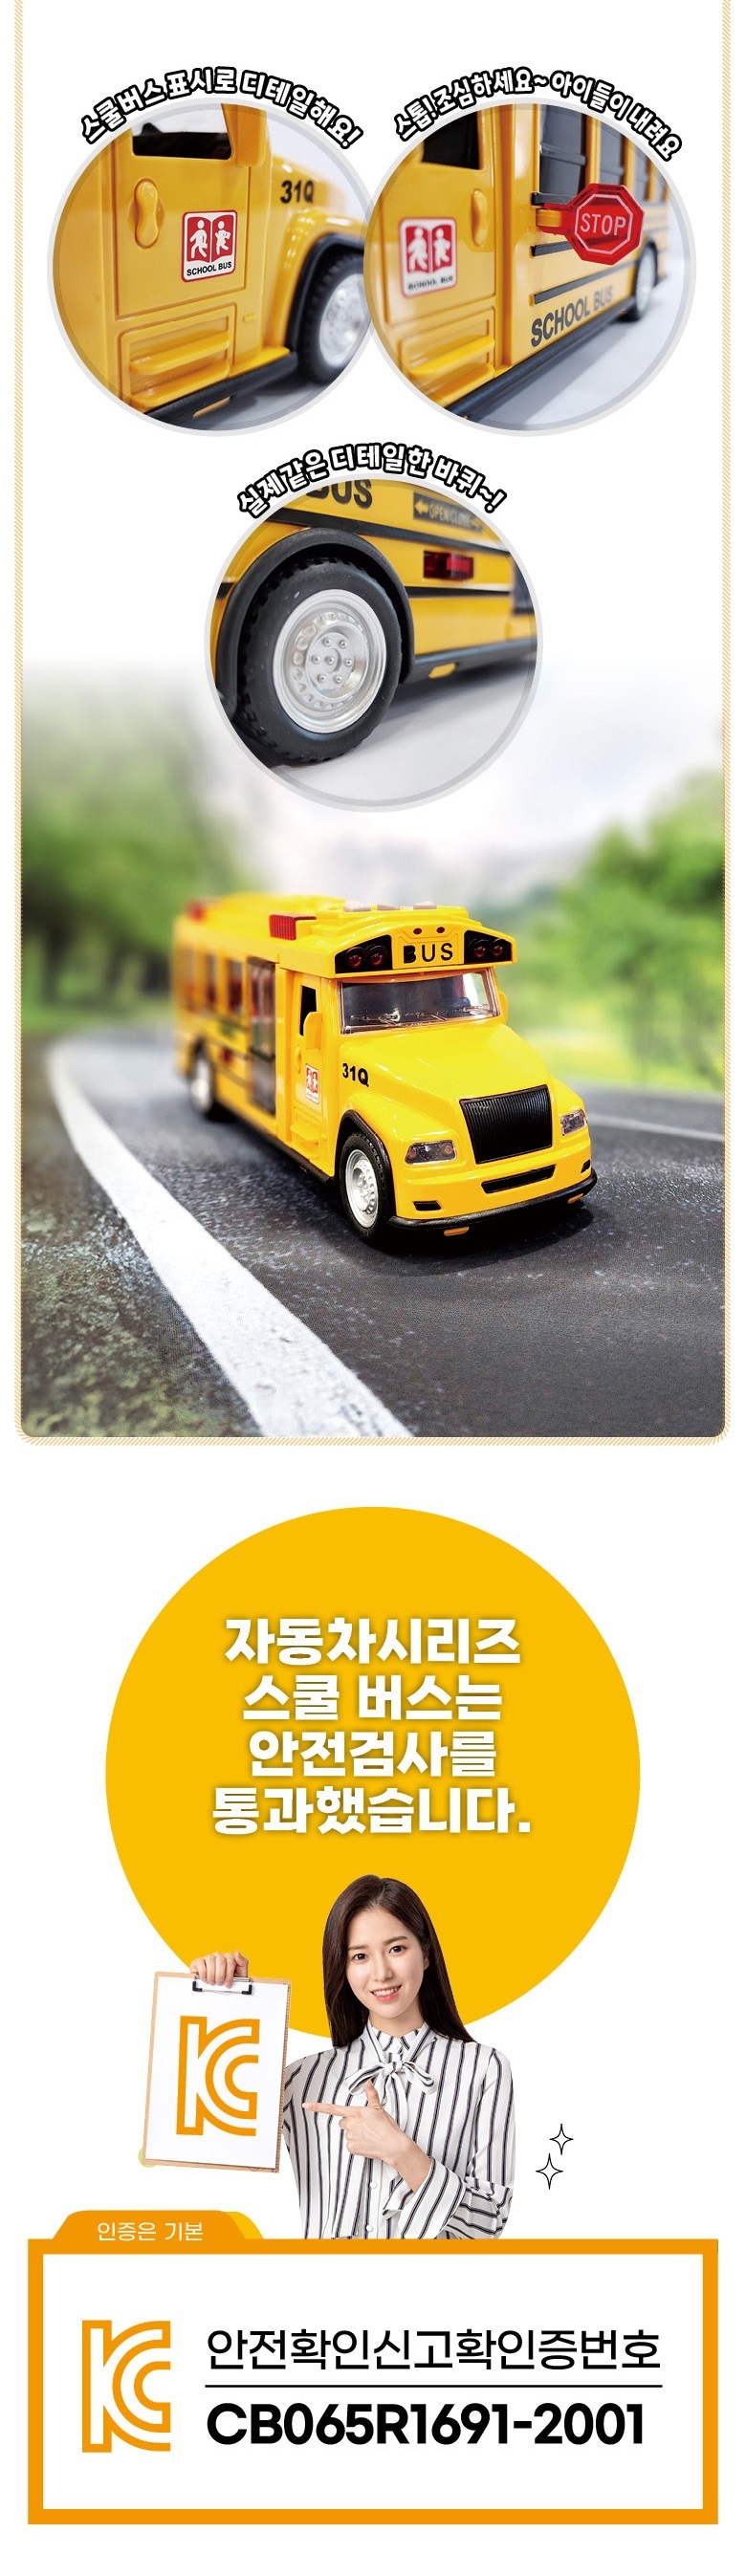 schoolbus24000_4.jpg